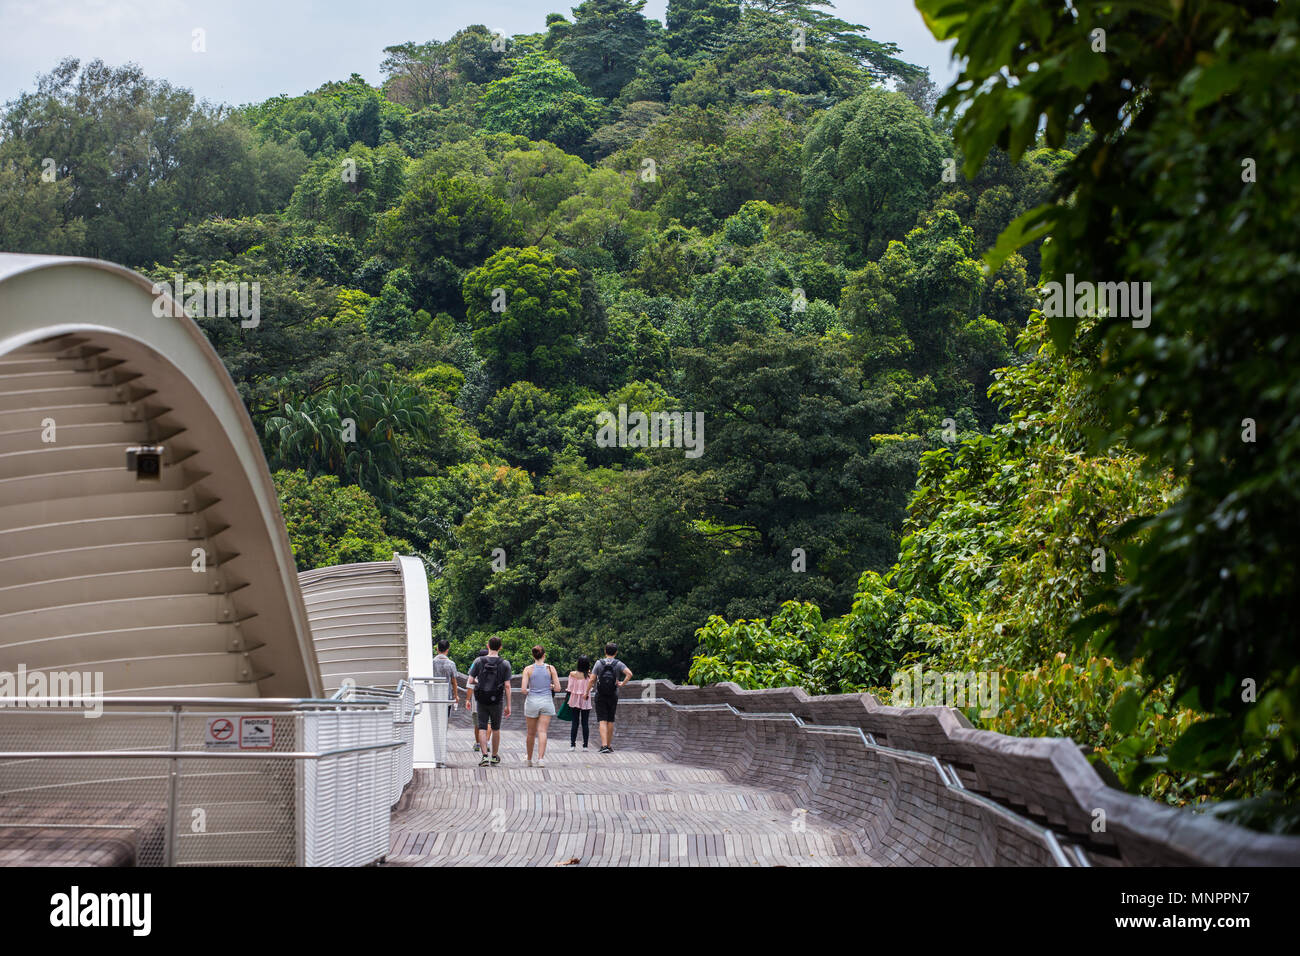 Henderson ponte a onda circondato dalla natura ambiente. Uno degli spot popolare per il locale e di interesse turistico da visitare e rilassatevi in Singapore. Foto Stock